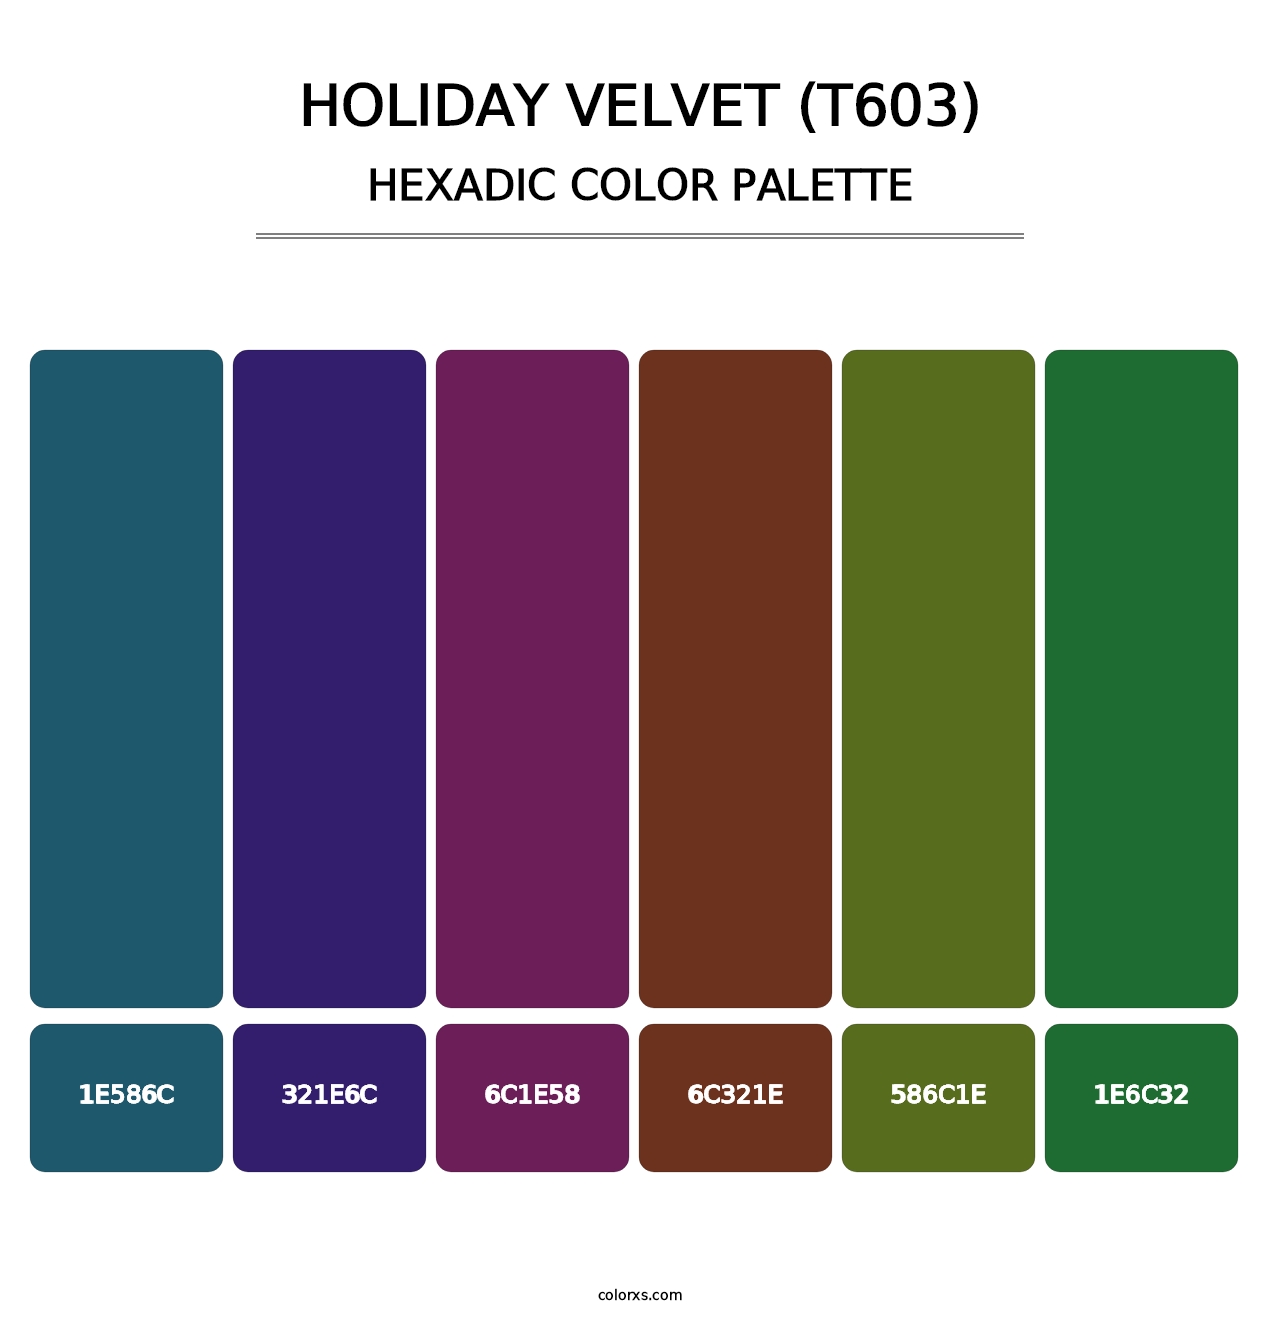 Holiday Velvet (T603) - Hexadic Color Palette